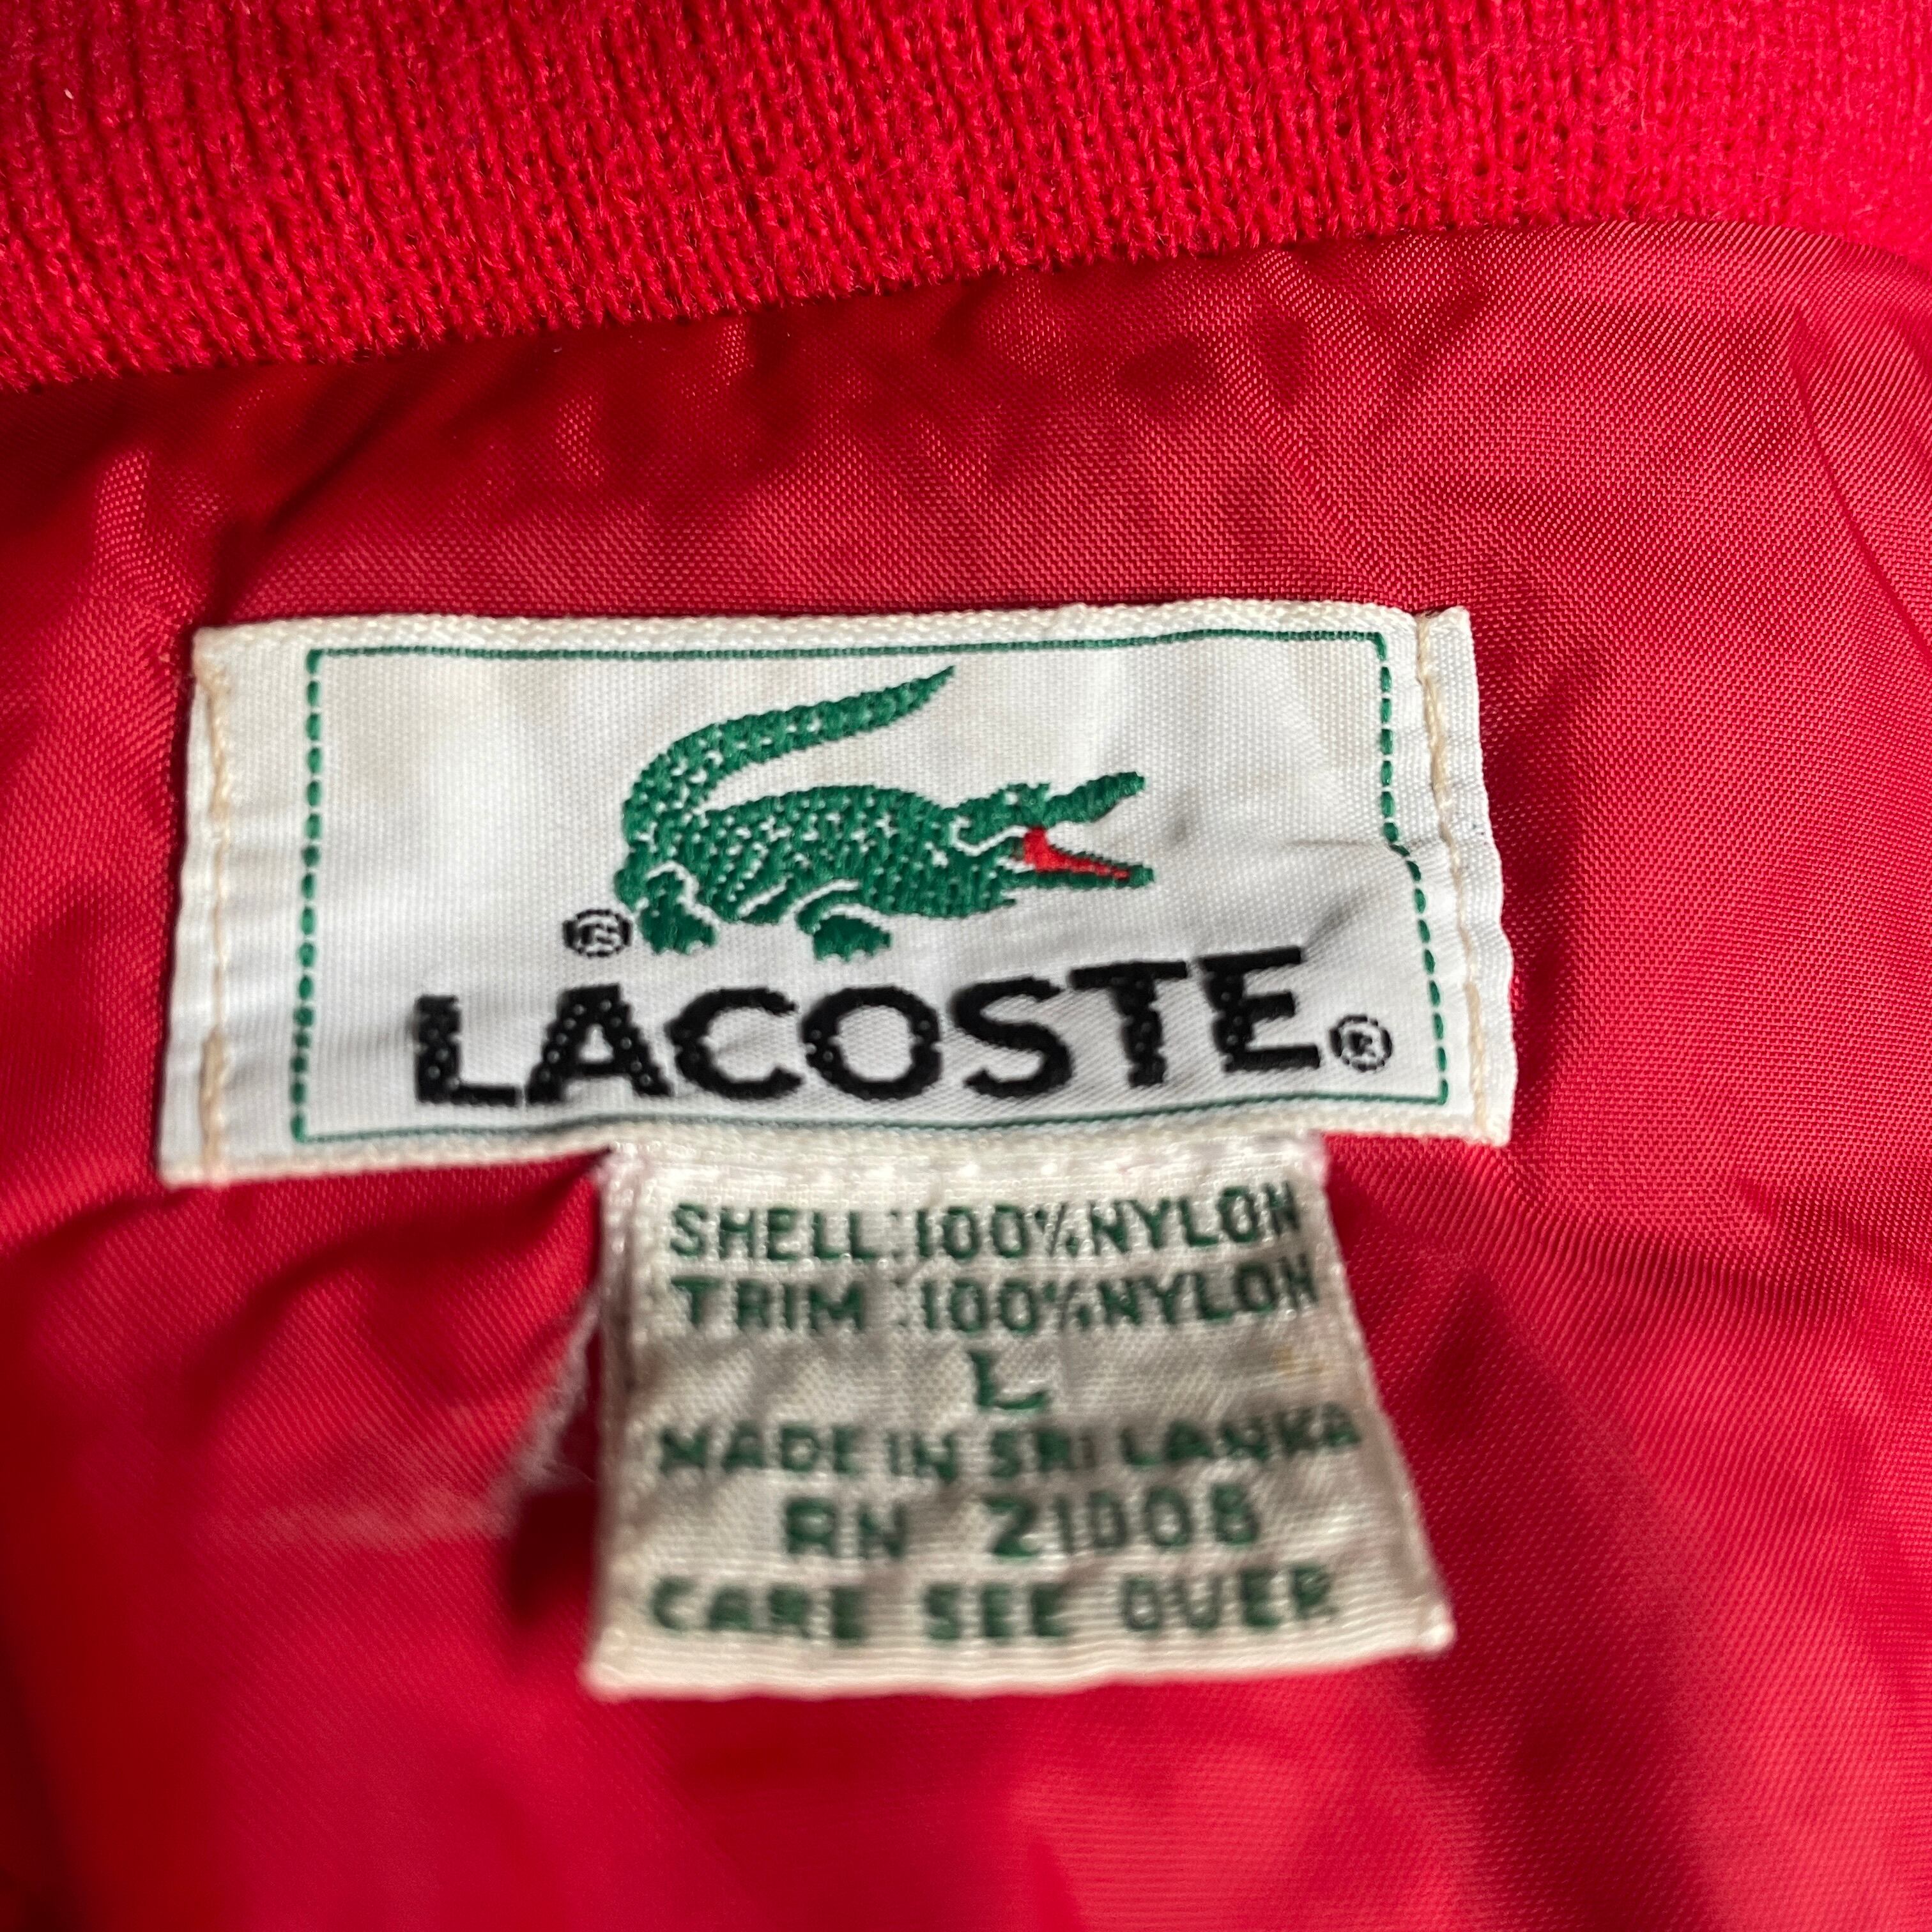 【レア】 LACOSTE ハイネックナイロンブルゾンジャケットレッド赤 好雰囲気